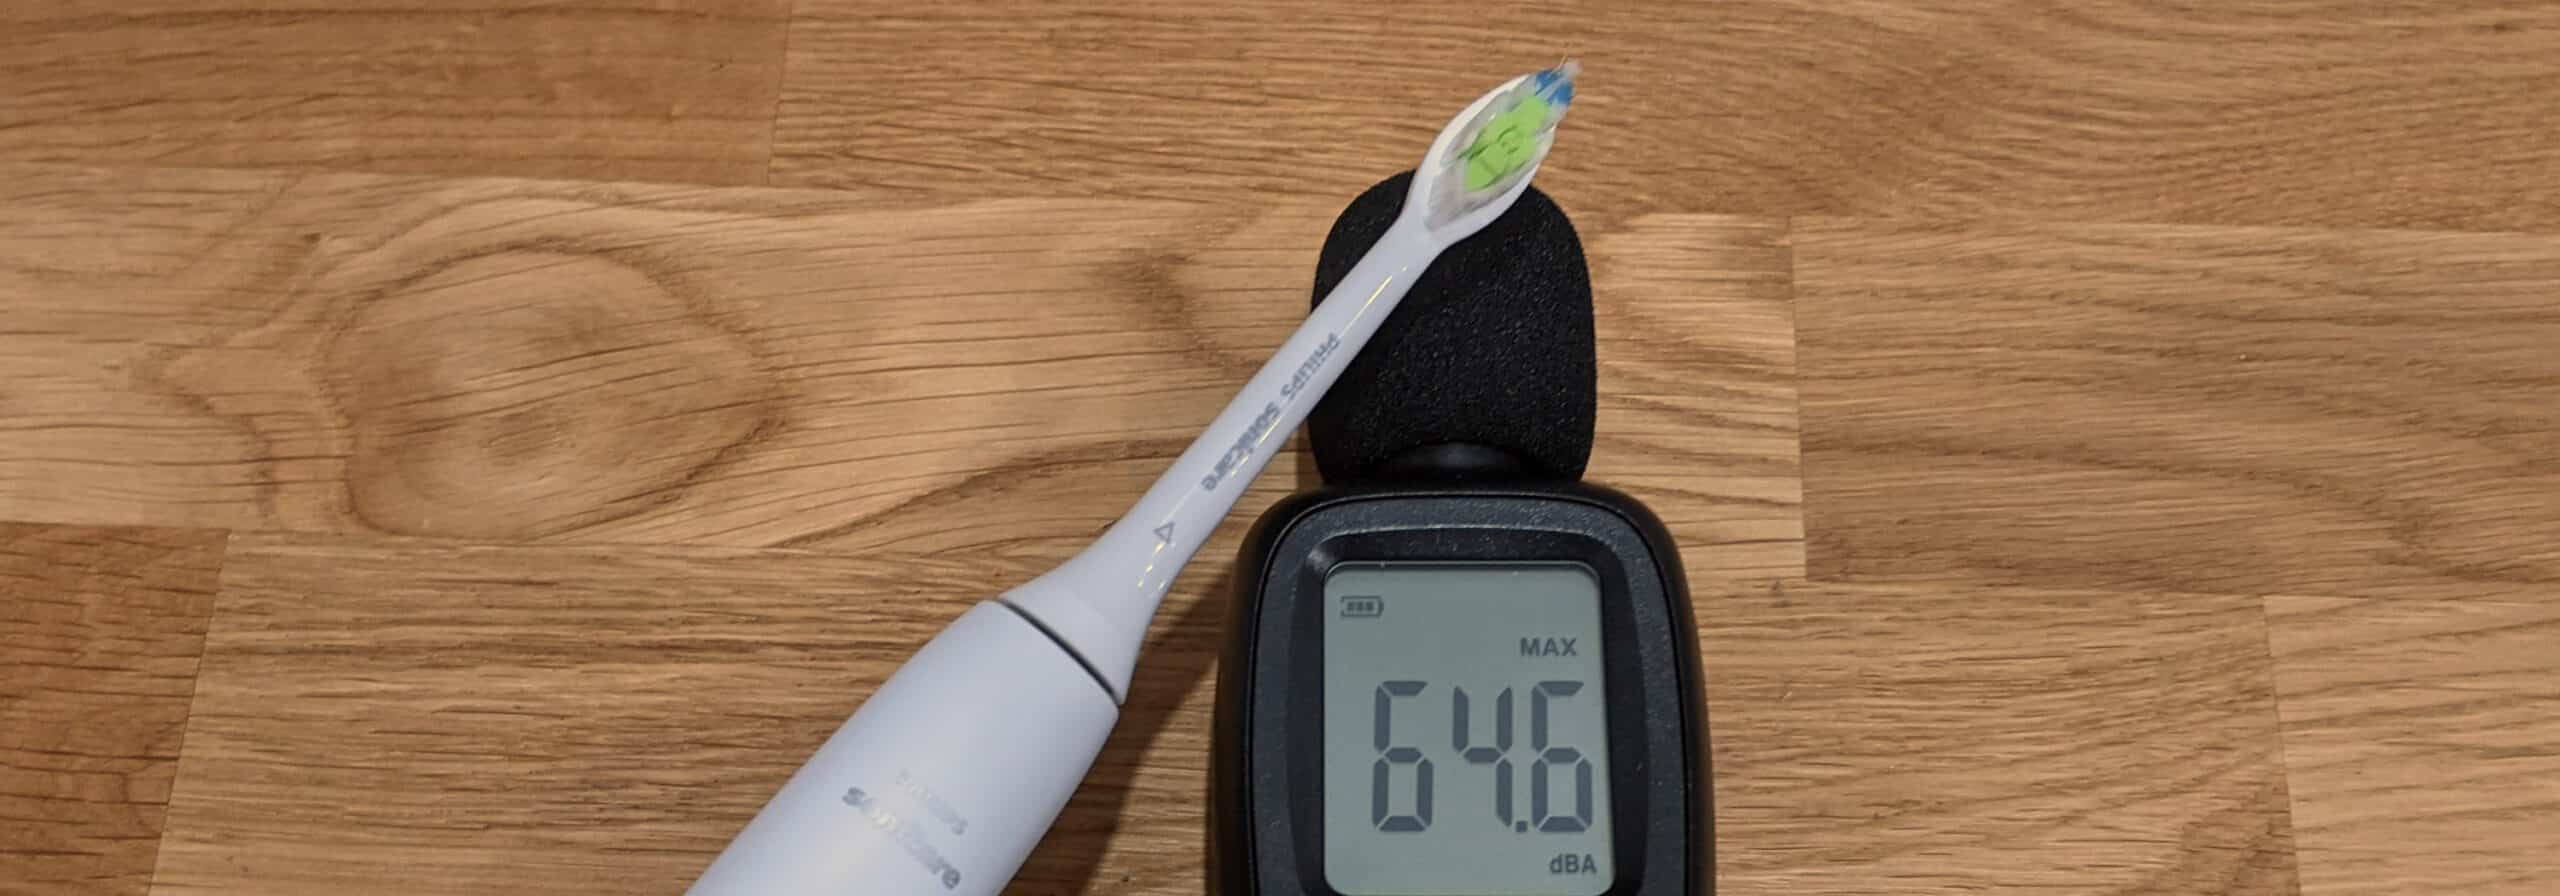 Sonicare Toothbrush Next To Decibel Meter